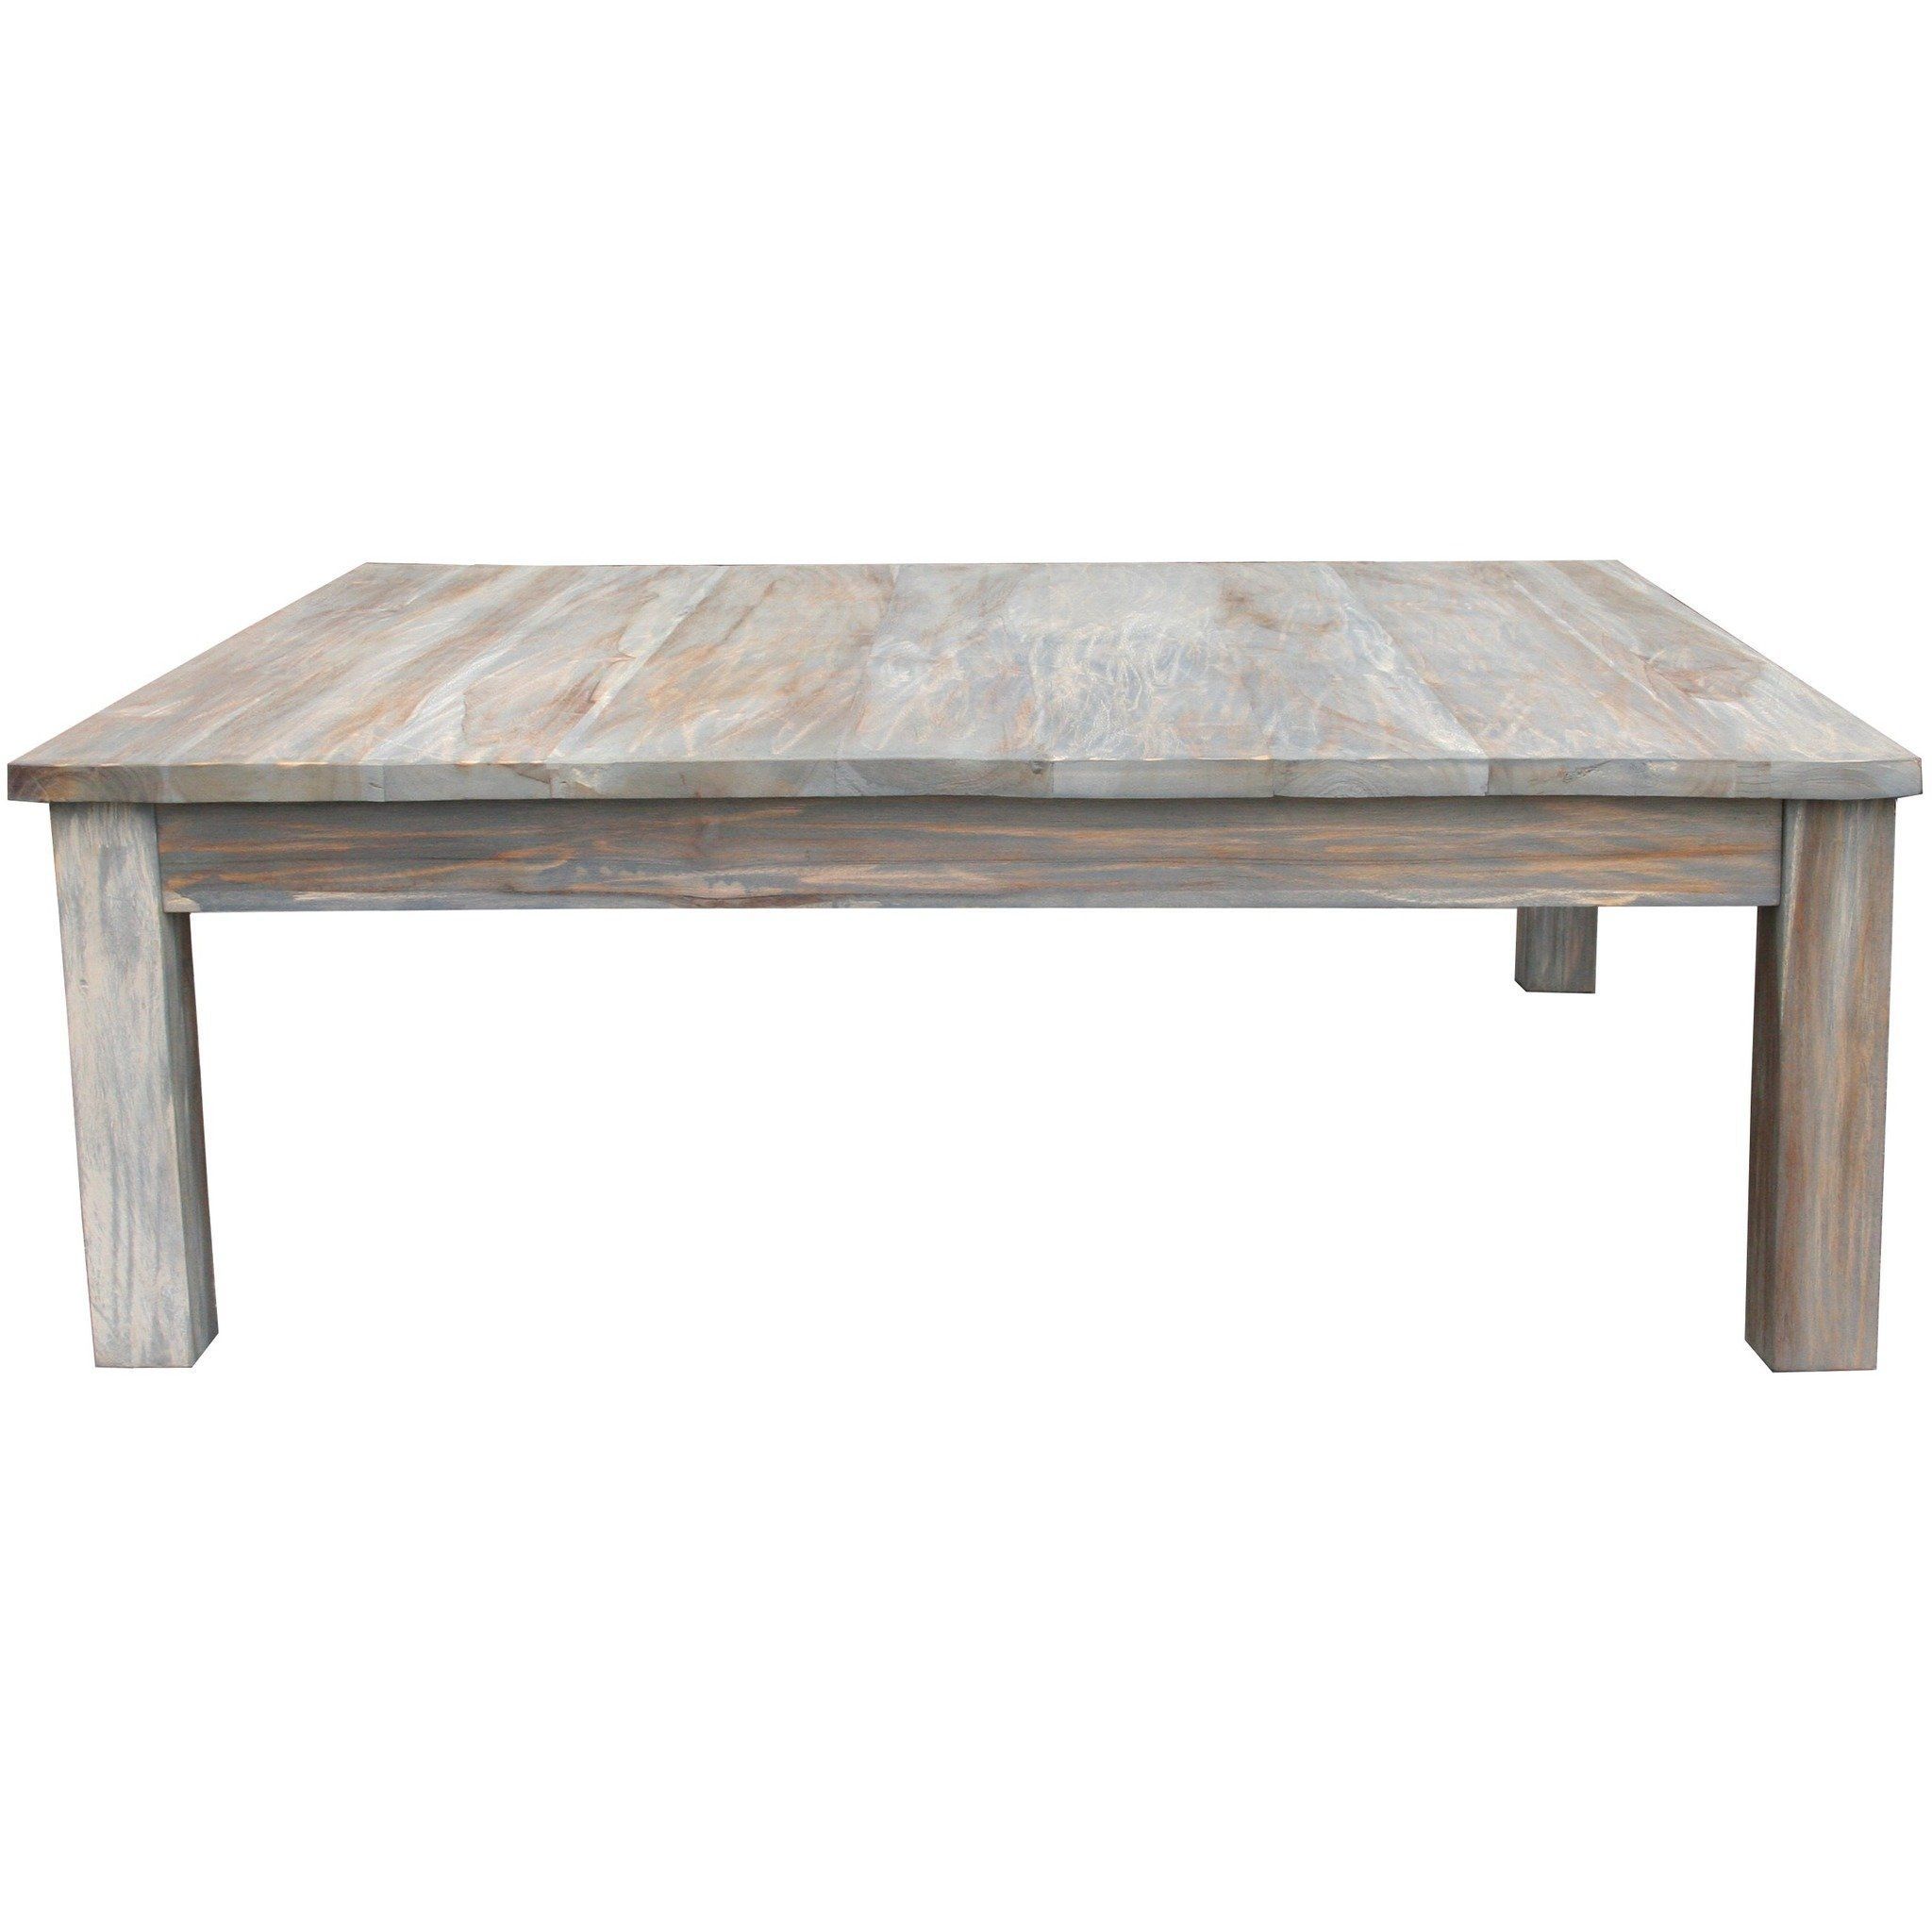 Teak Wood Grey Wash Rustic Coffee Table 48 | Coffee Table Inside Gray Driftwood Storage Coffee Tables (View 5 of 15)